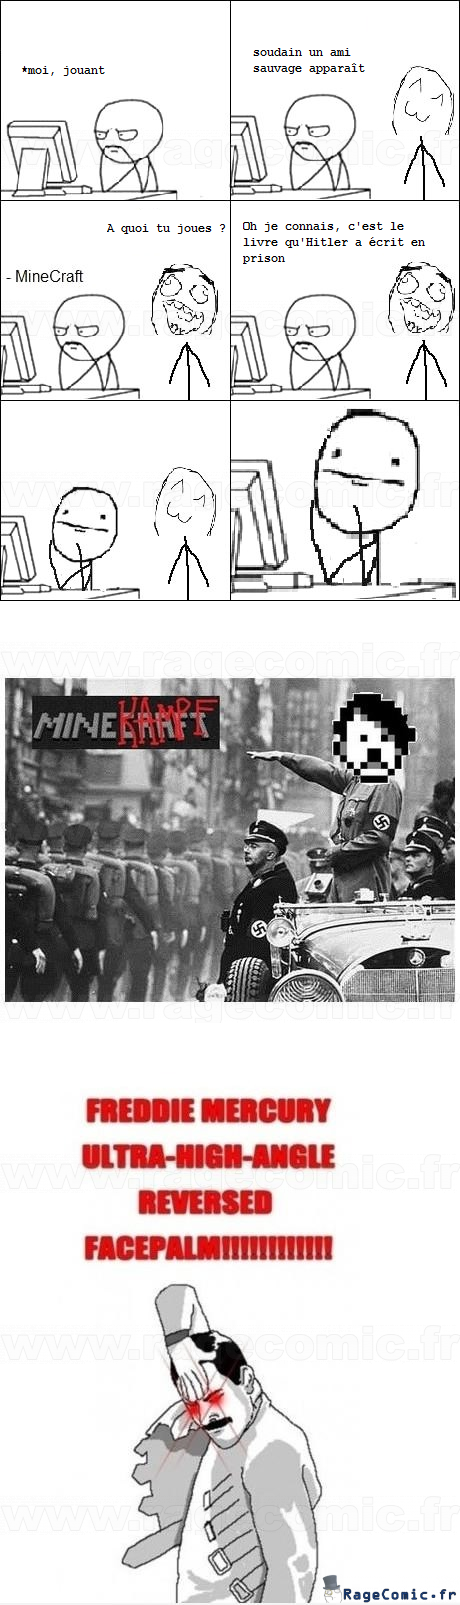 MineCraft par Hitler